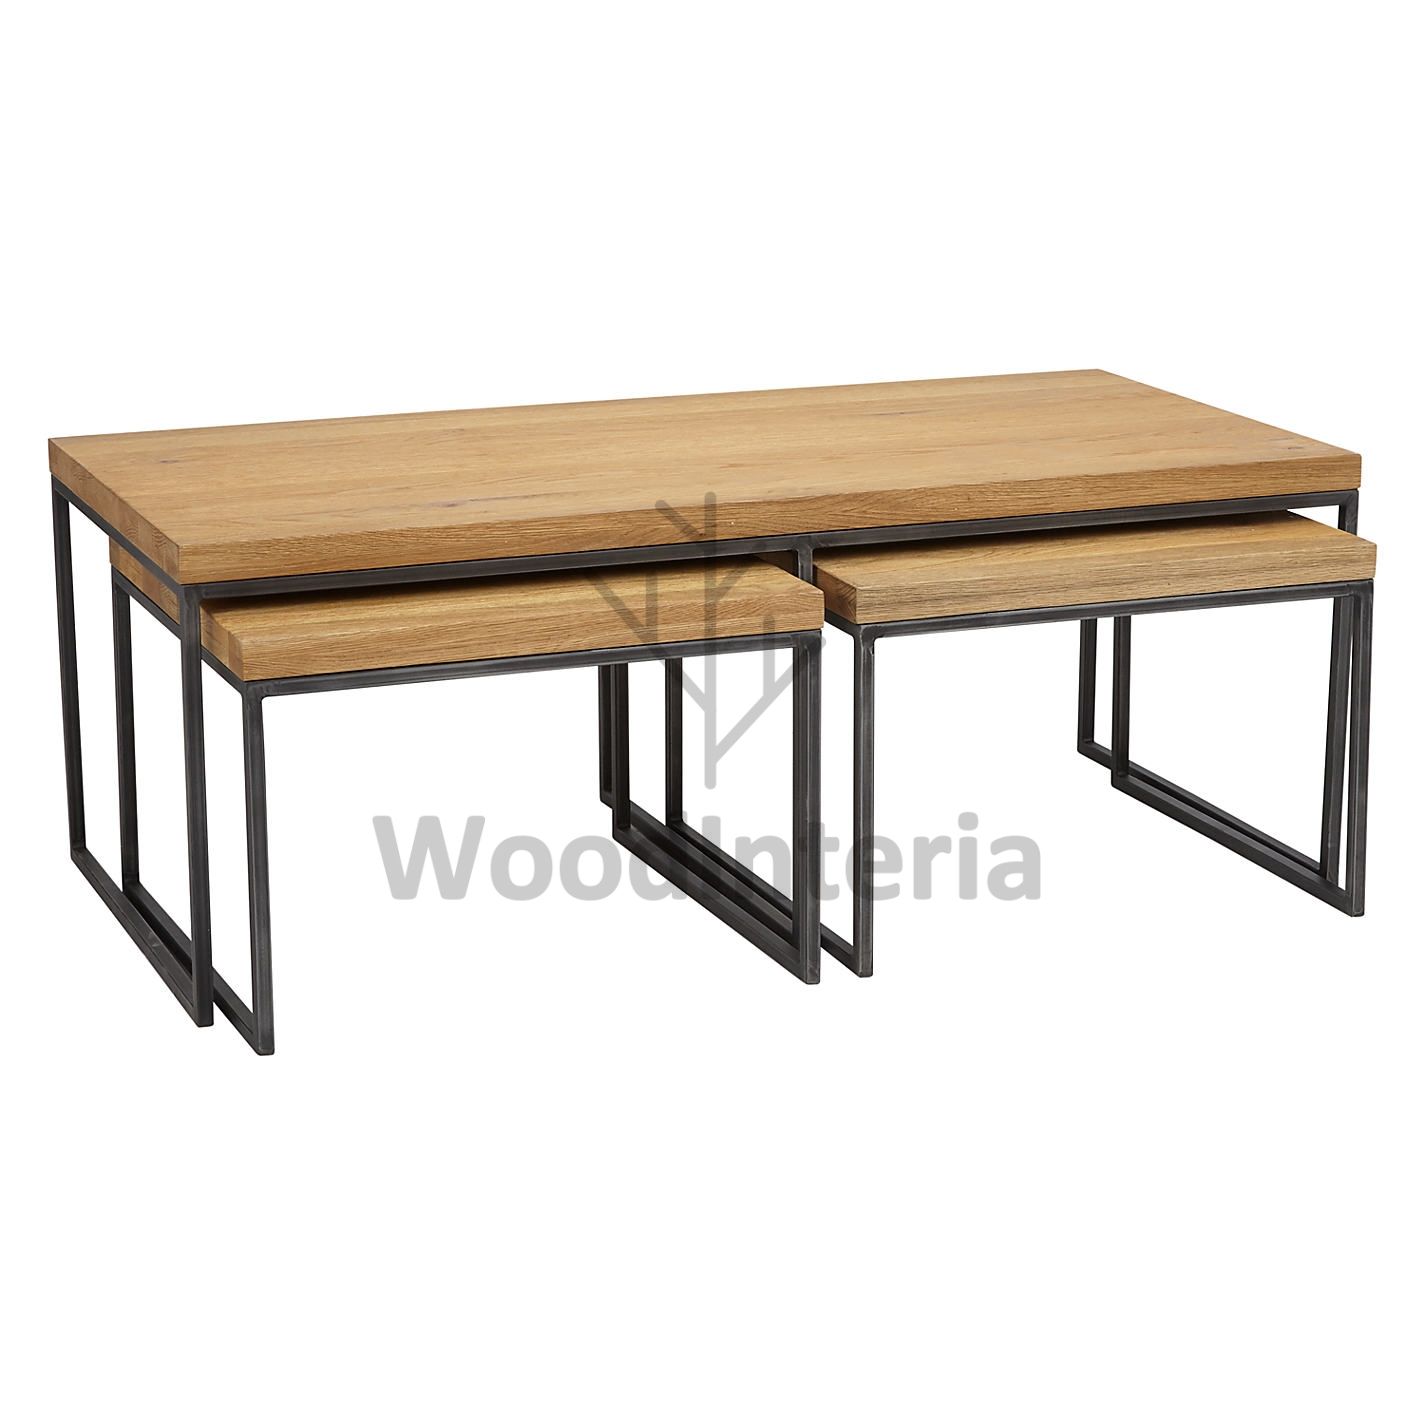 журнальный столик loft industrial oak qubris trio в стиле лофт индастриал WoodInteria